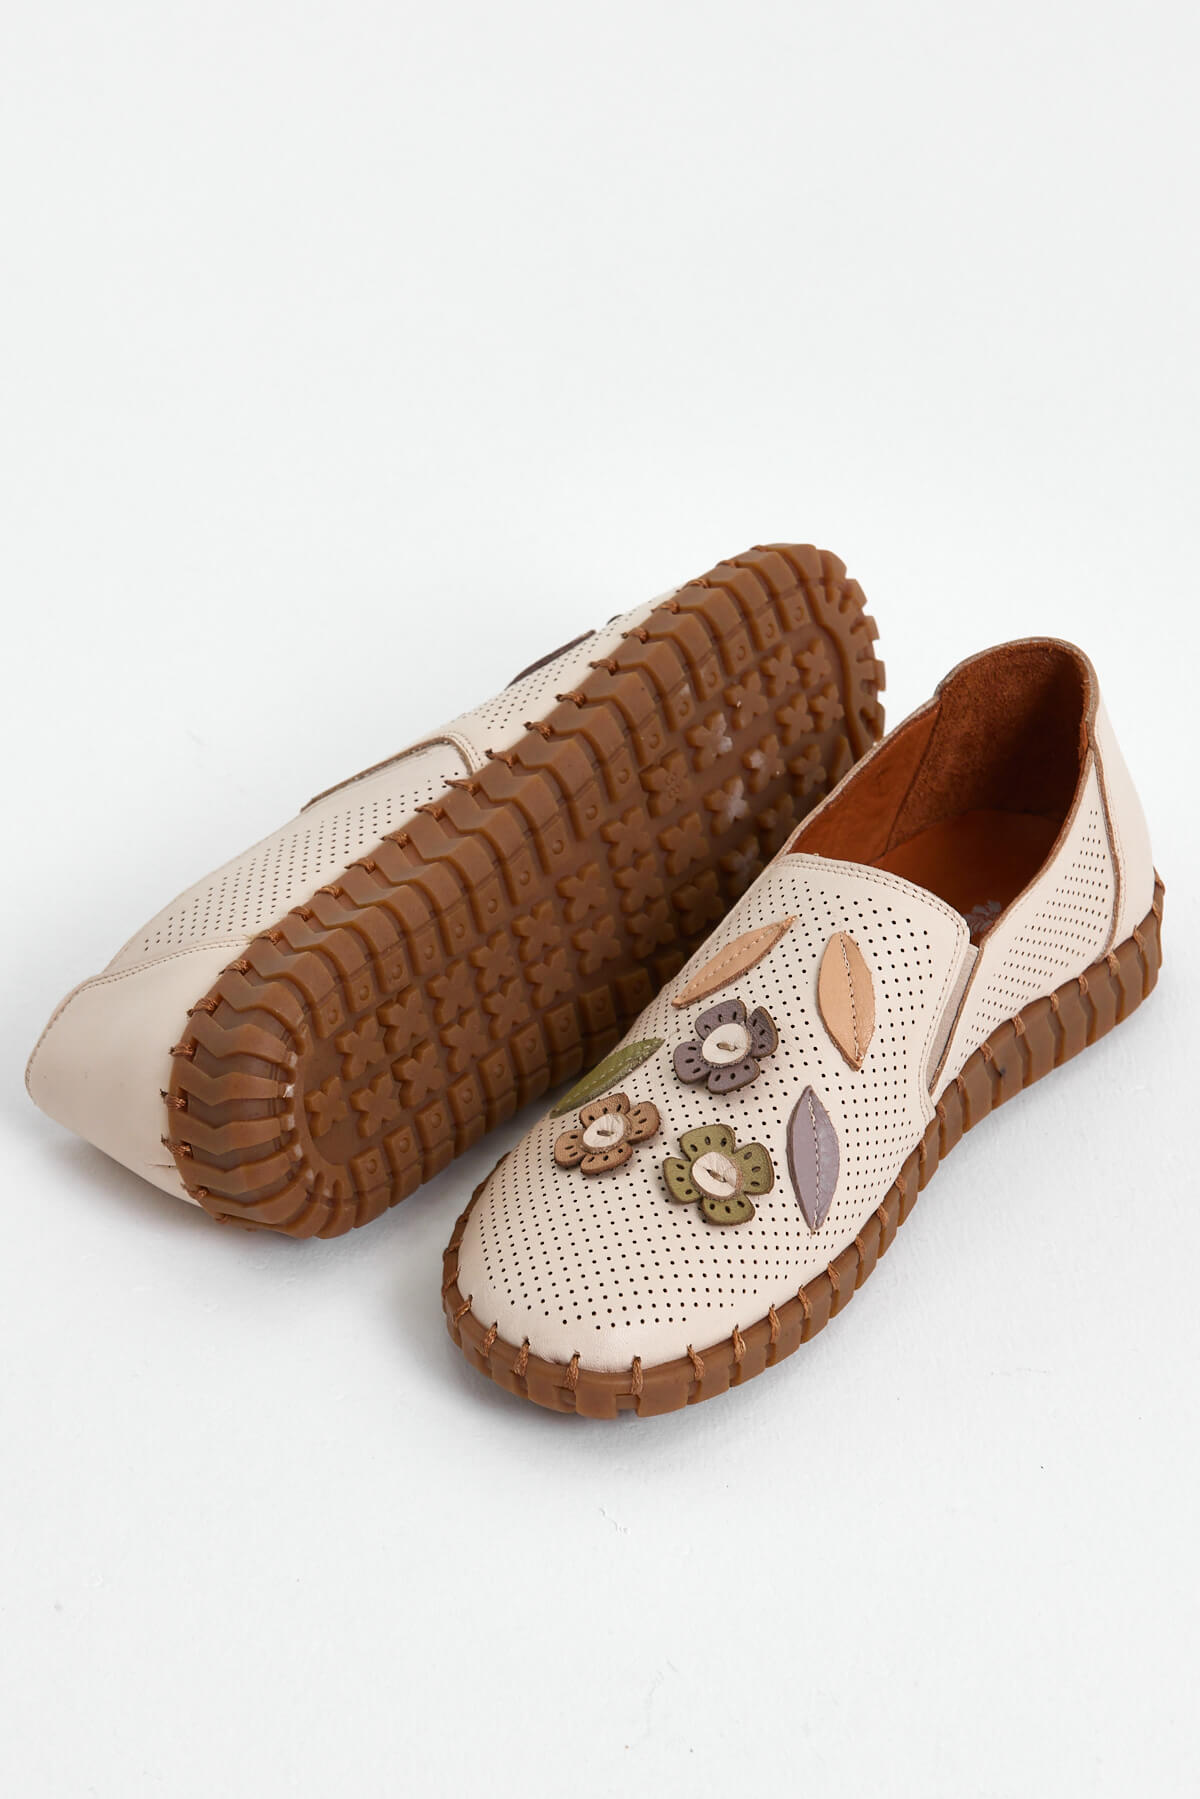 Kadın Comfort Deri Ayakkabı Bej 2010719Y - Thumbnail